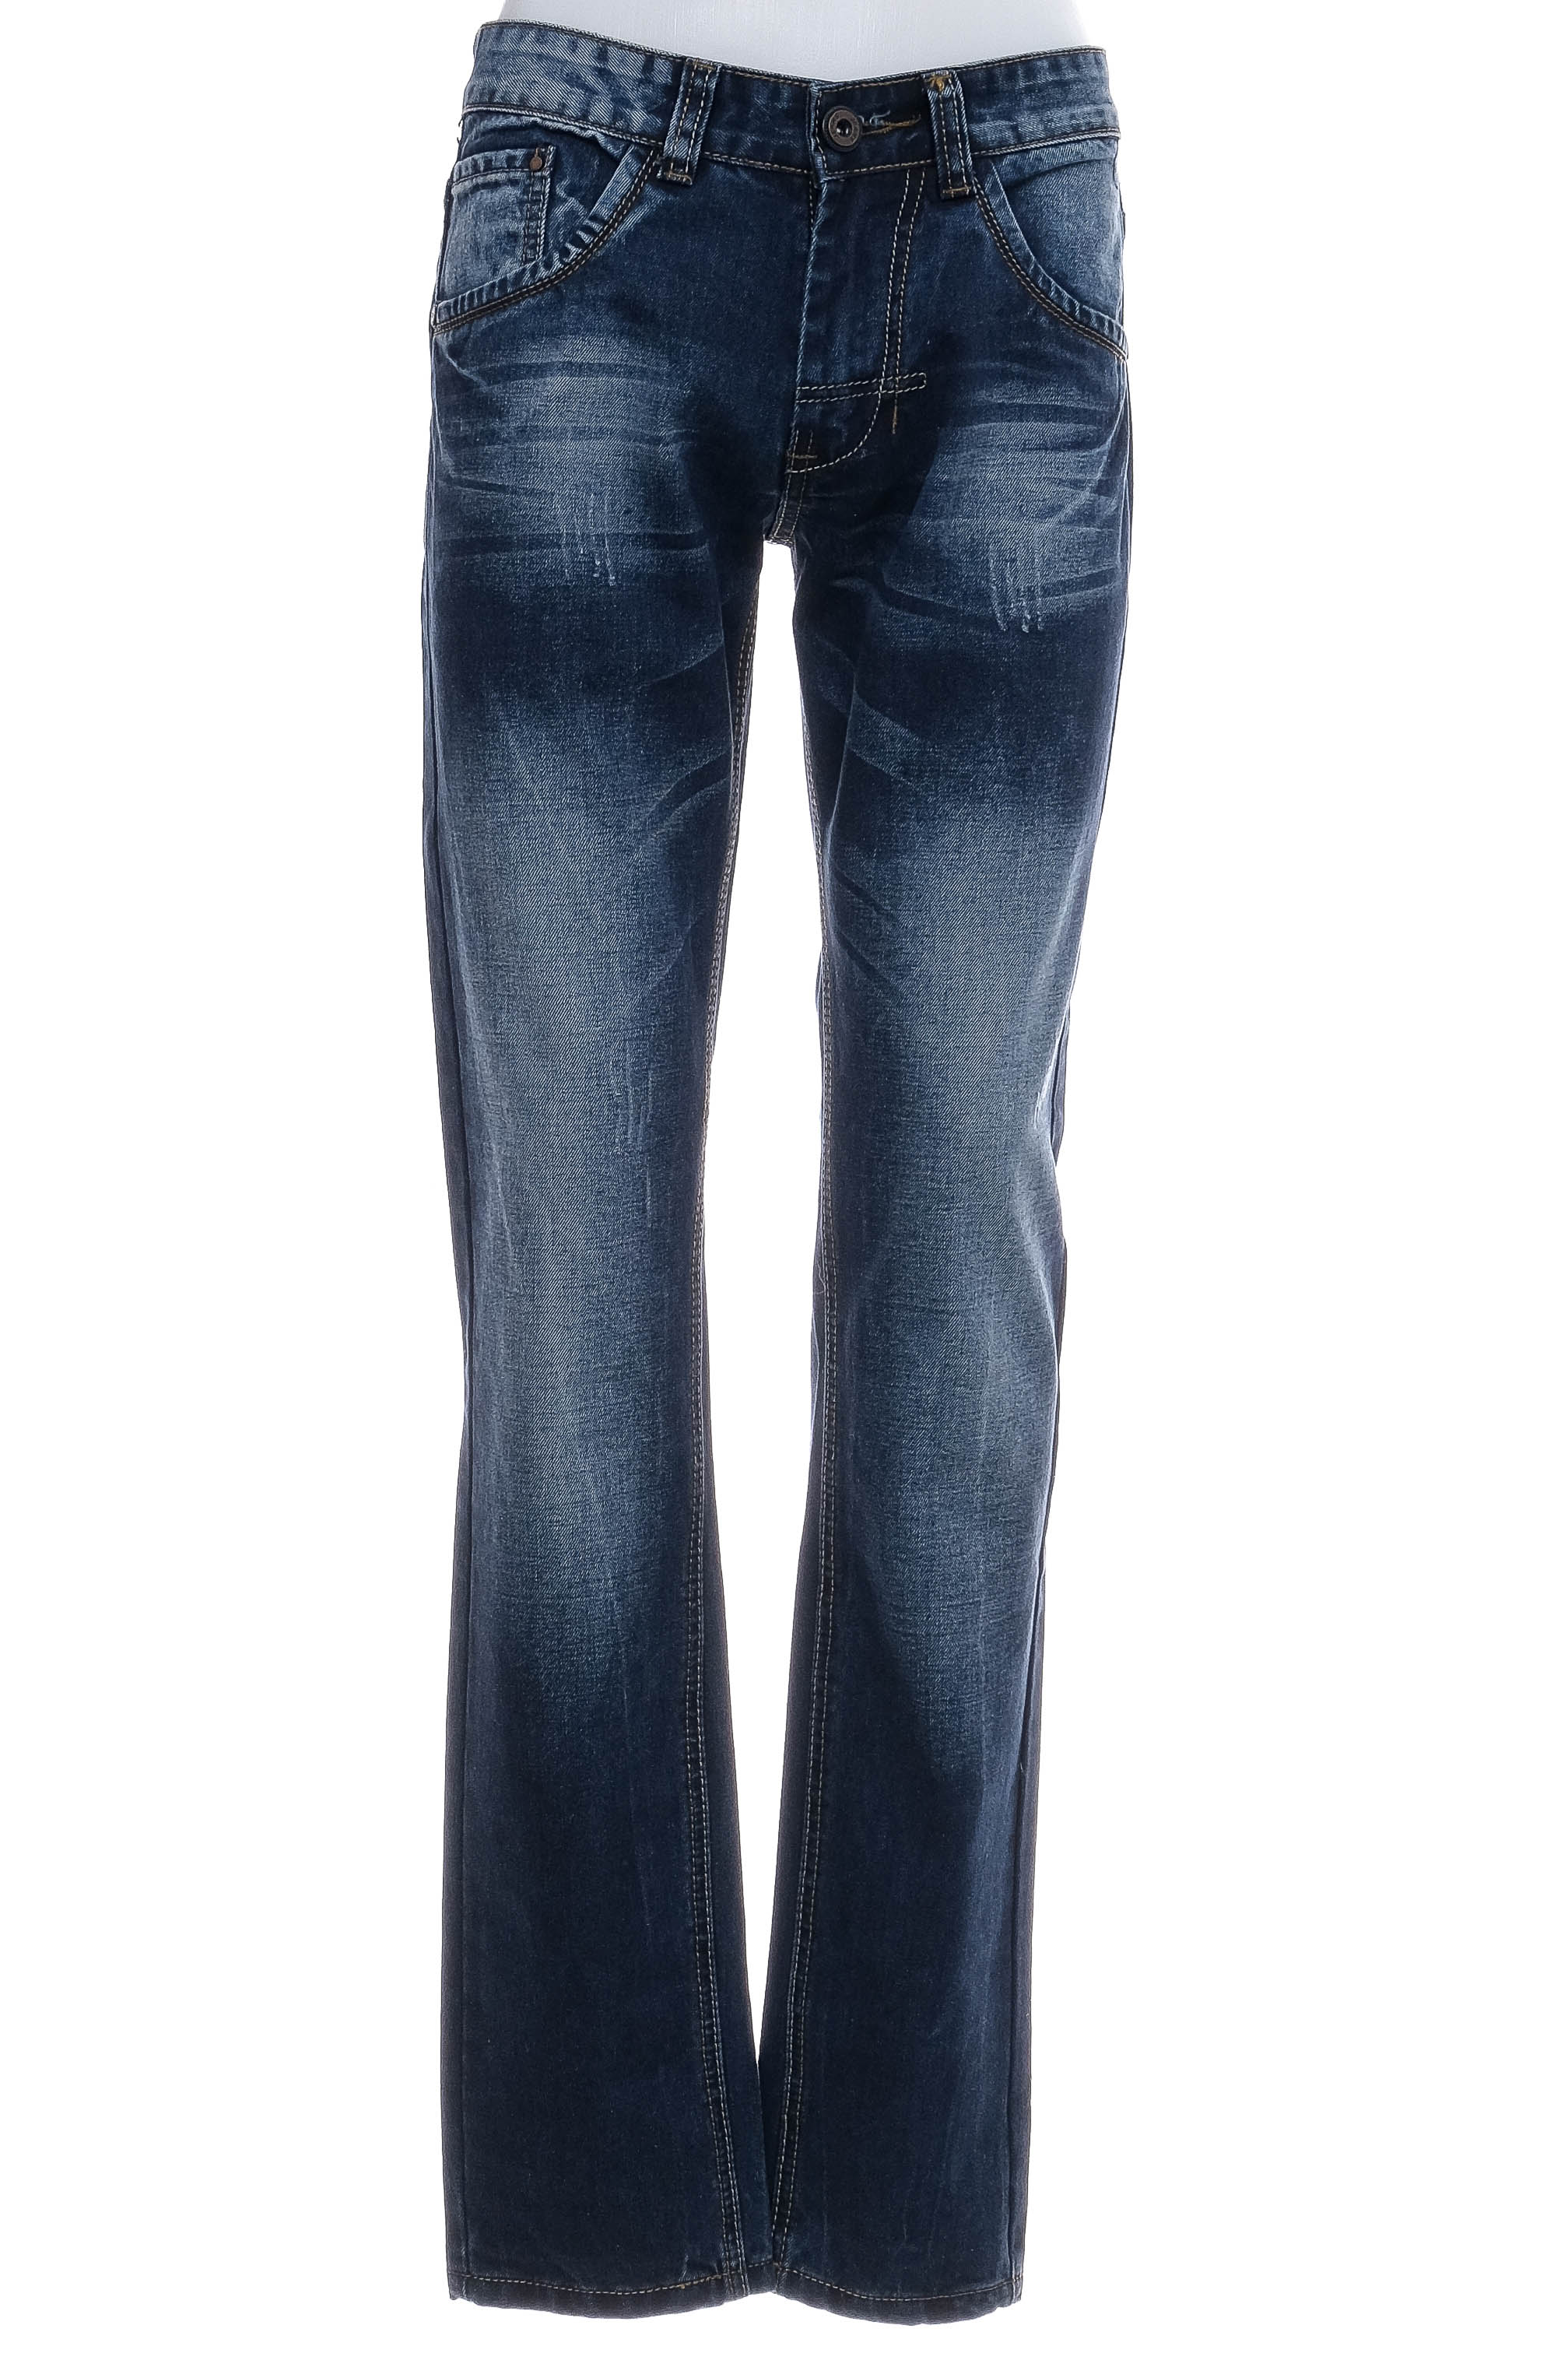 Men's jeans - Leggendario - 0